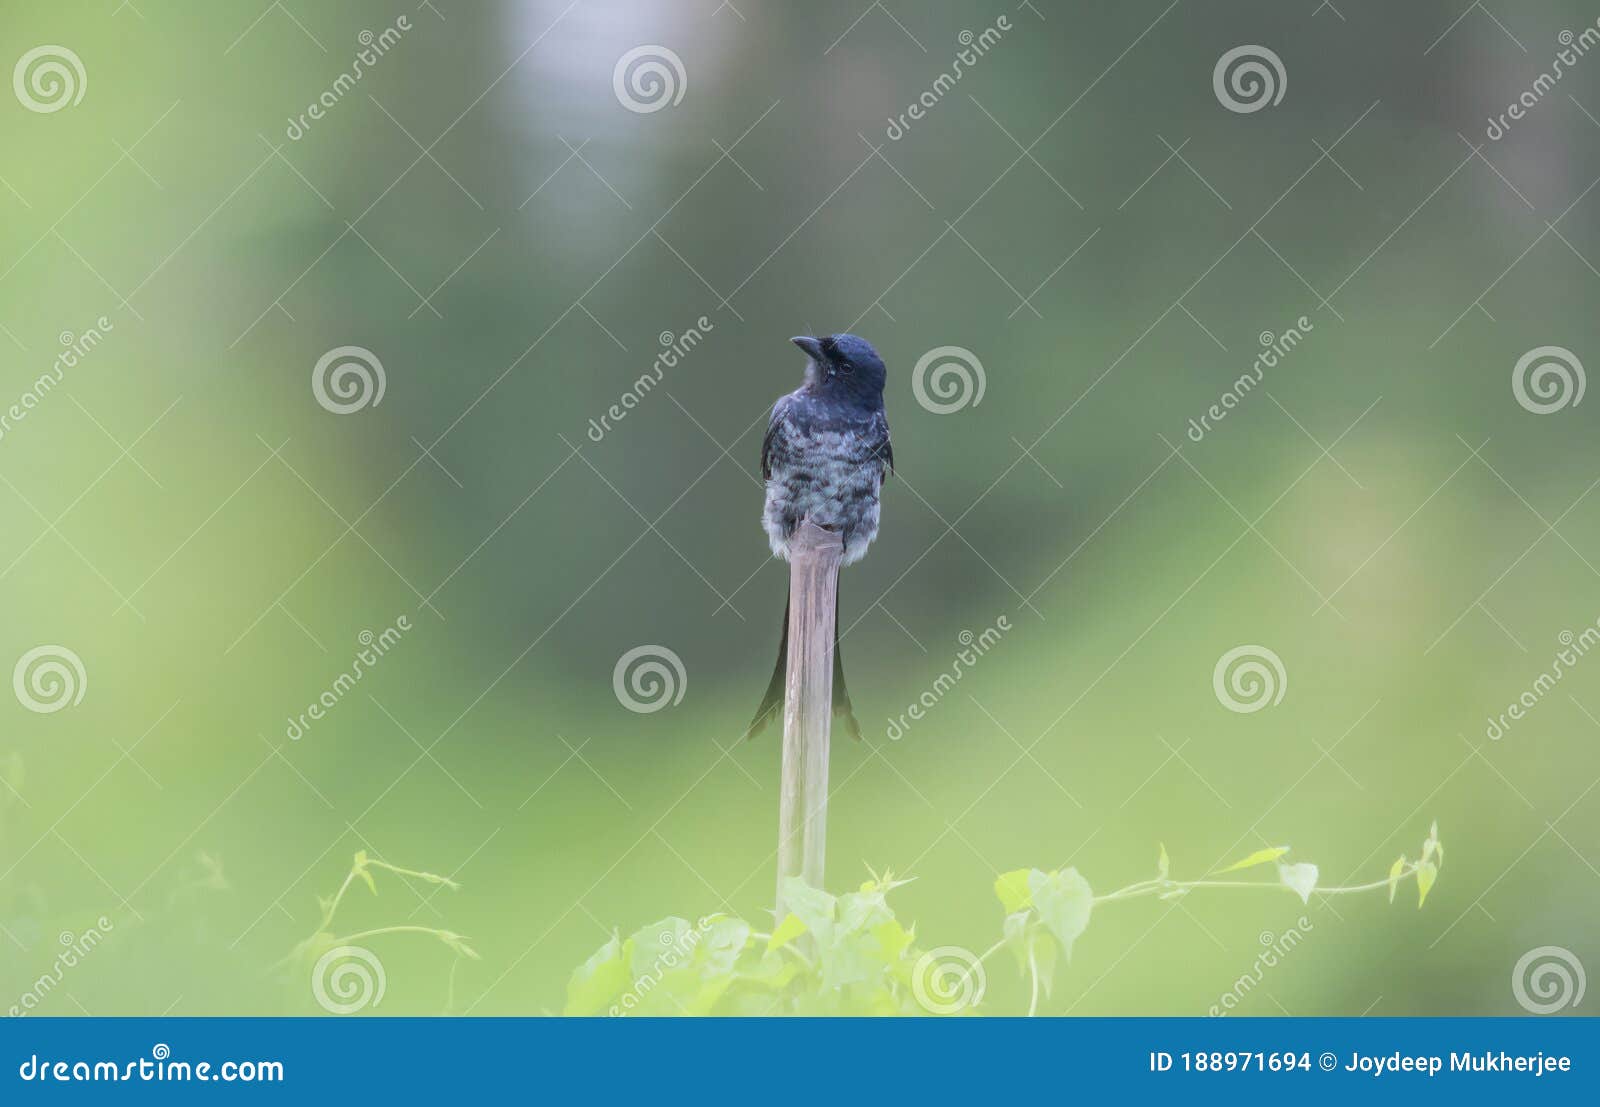 wildbird bamboo